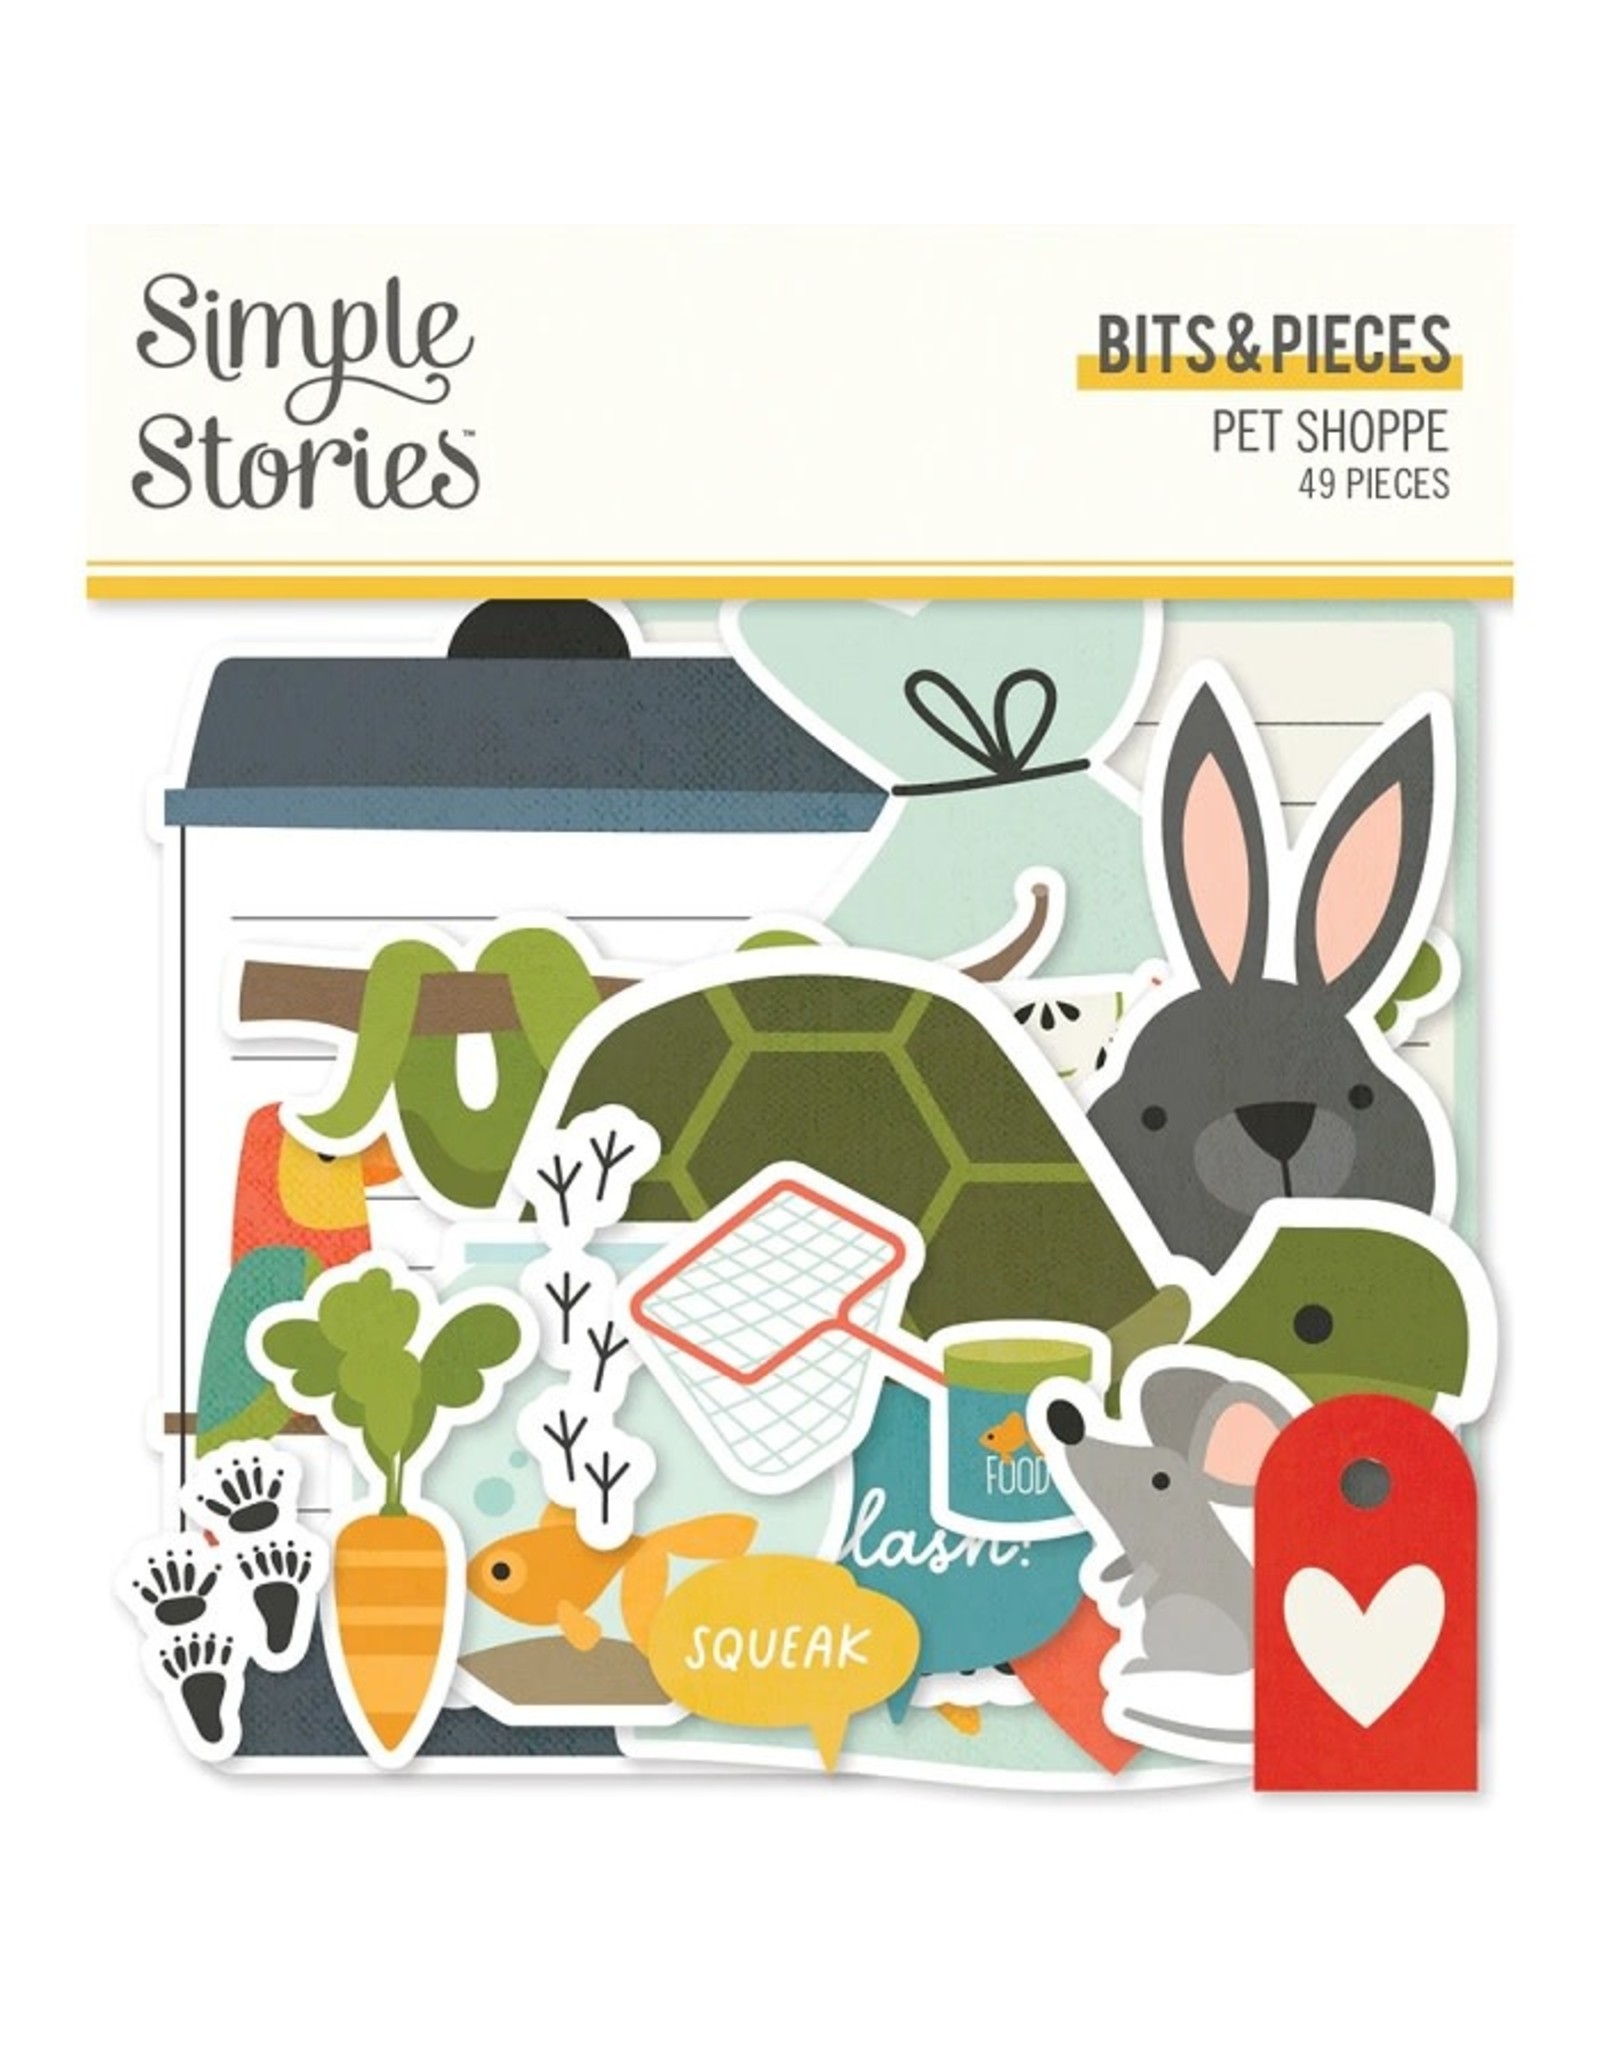 Simple Stories Pet Shoppe - Bits & Pieces